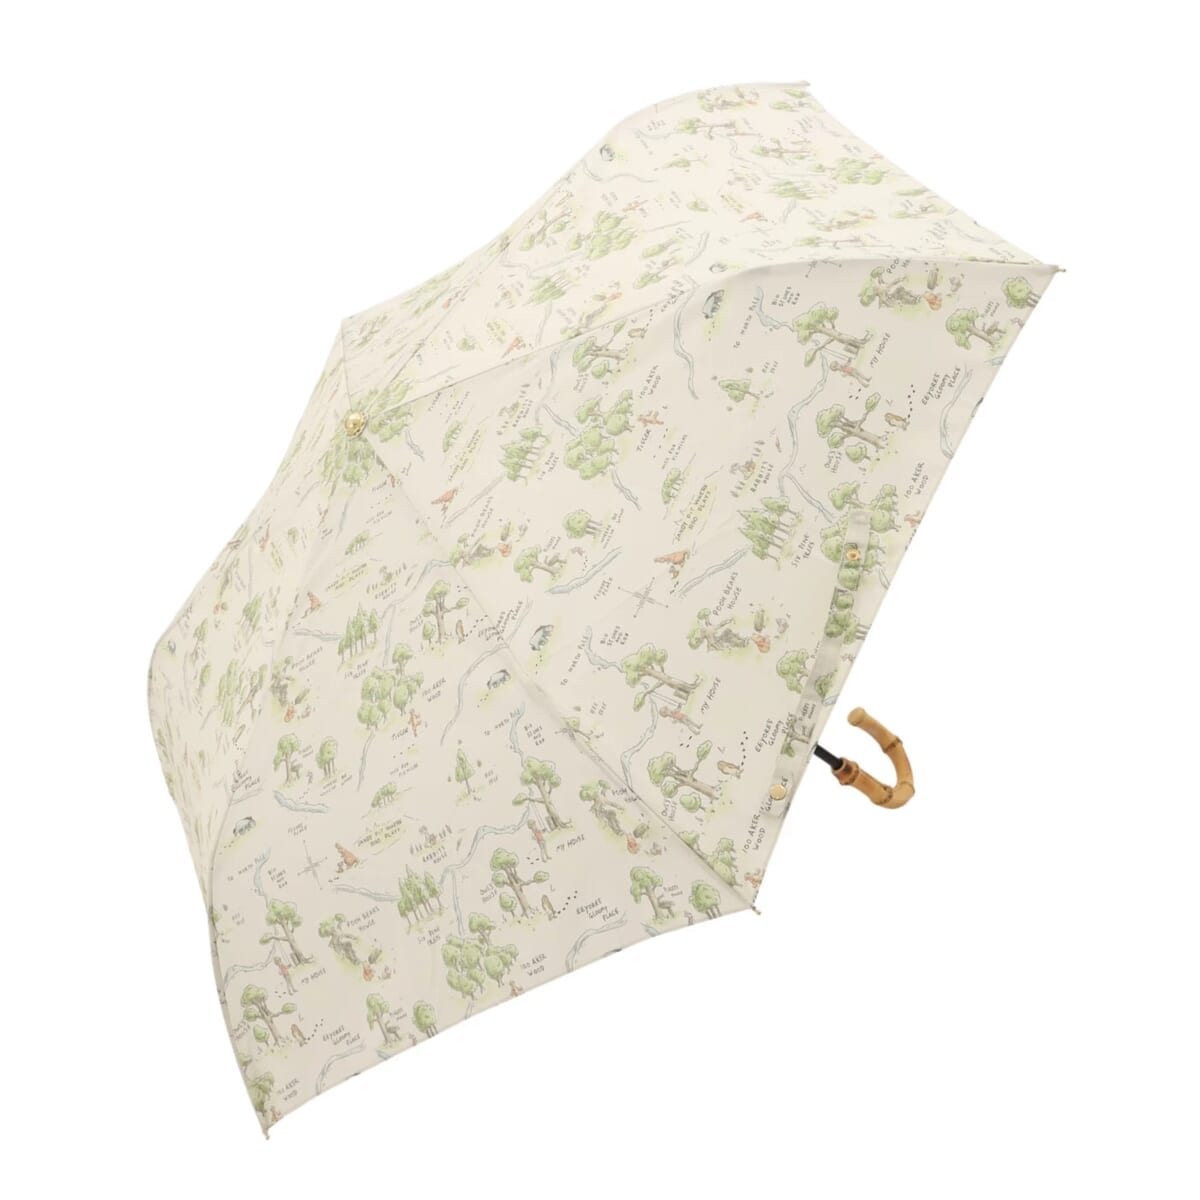 Plus Anq「くまのプーさん」デザイン 折りたたみ傘 婦人用